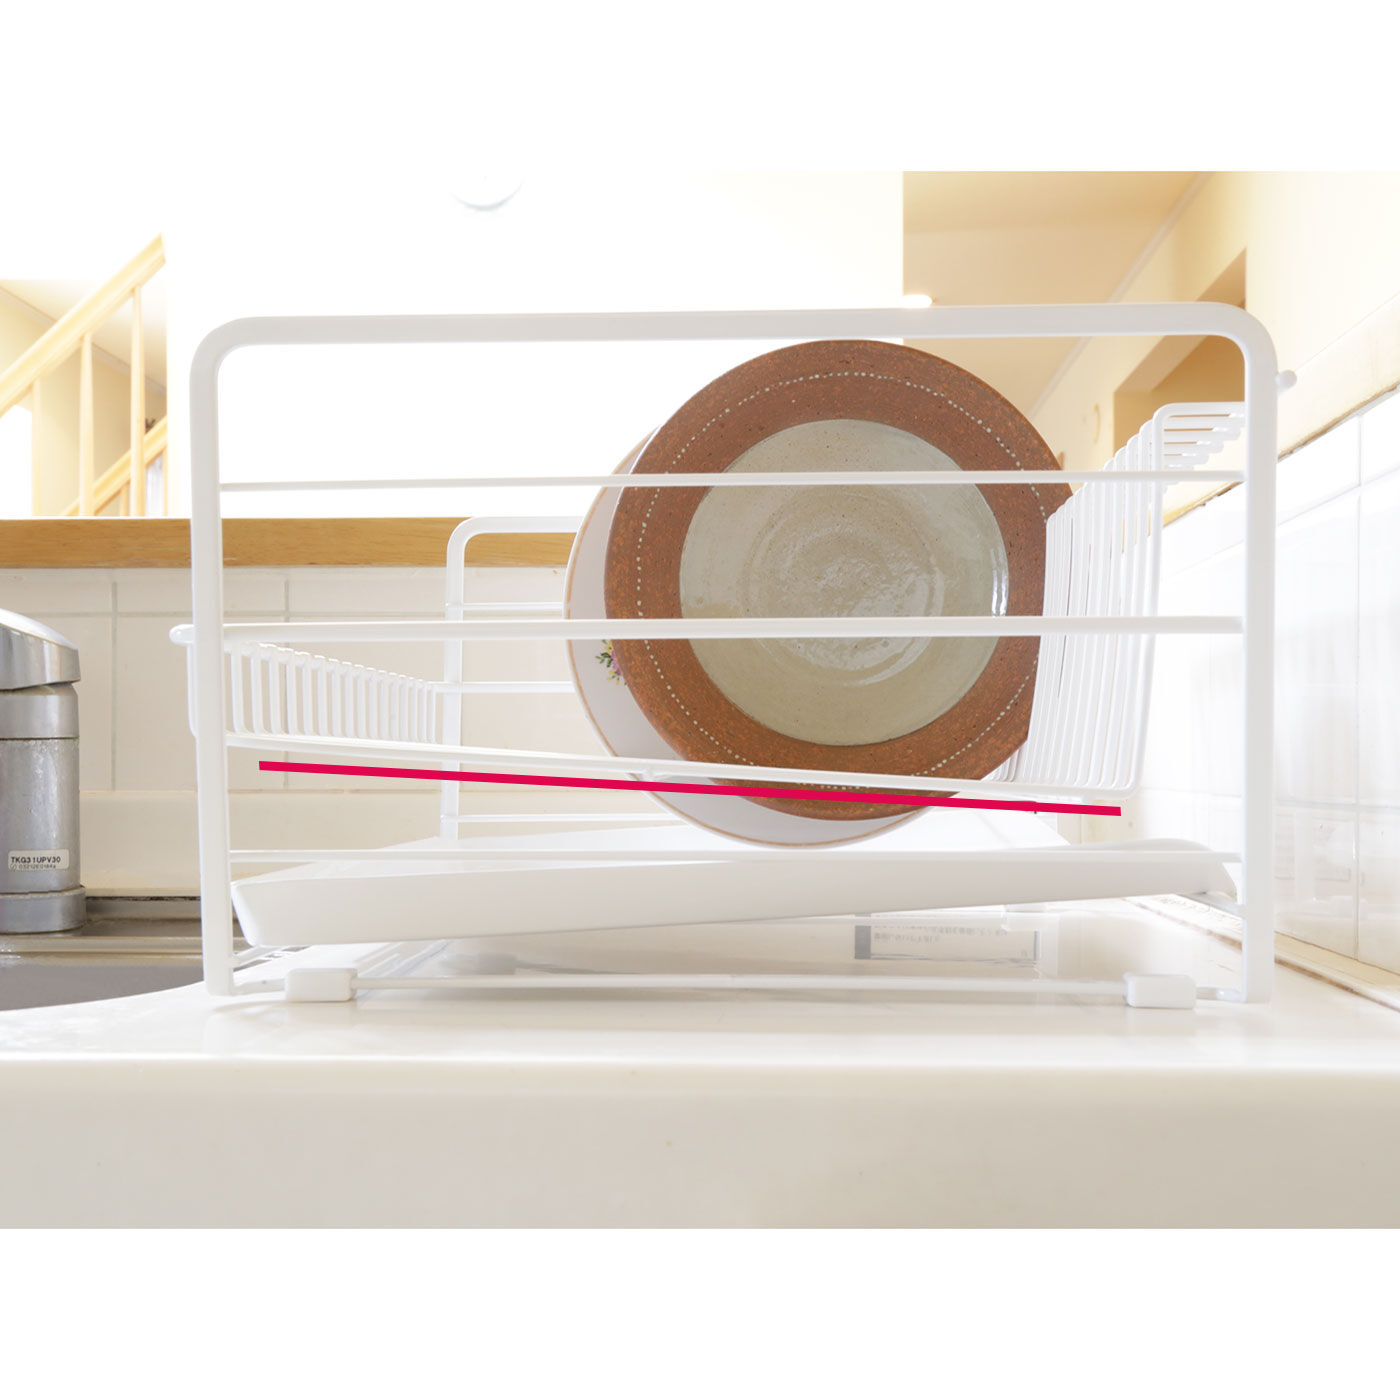 フェリシモの雑貨 Kraso|シンクまわりをすっきりきれいに　水受けトレイ付き水きりラック|傾斜設計で、お皿がしっかり立ちます